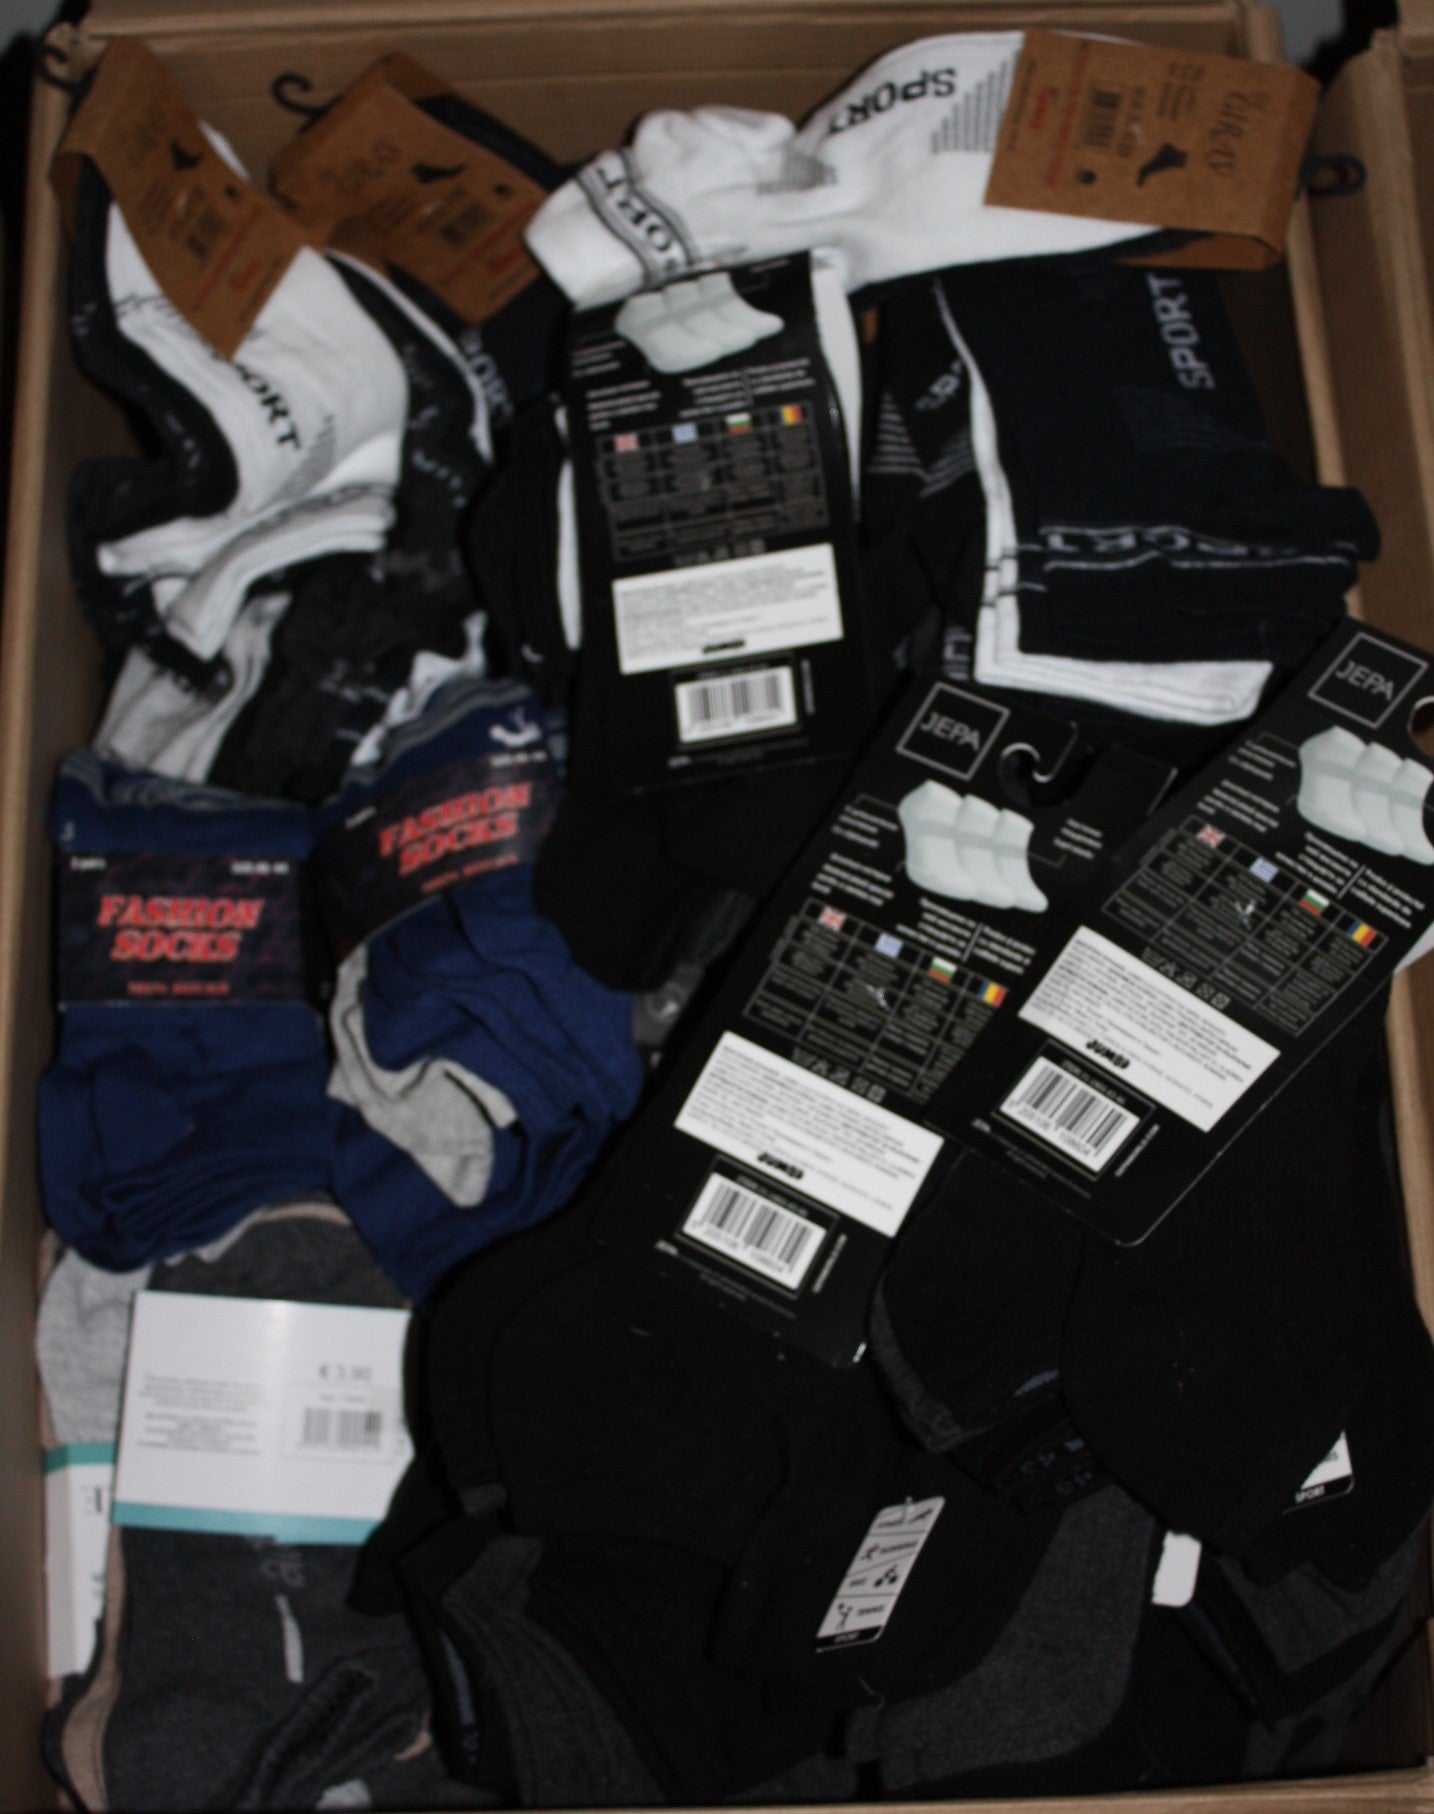 Packung mit 50 Paar Socken – Qualität für Herren, Räumungspalette – Wiederverkäufer-Charge